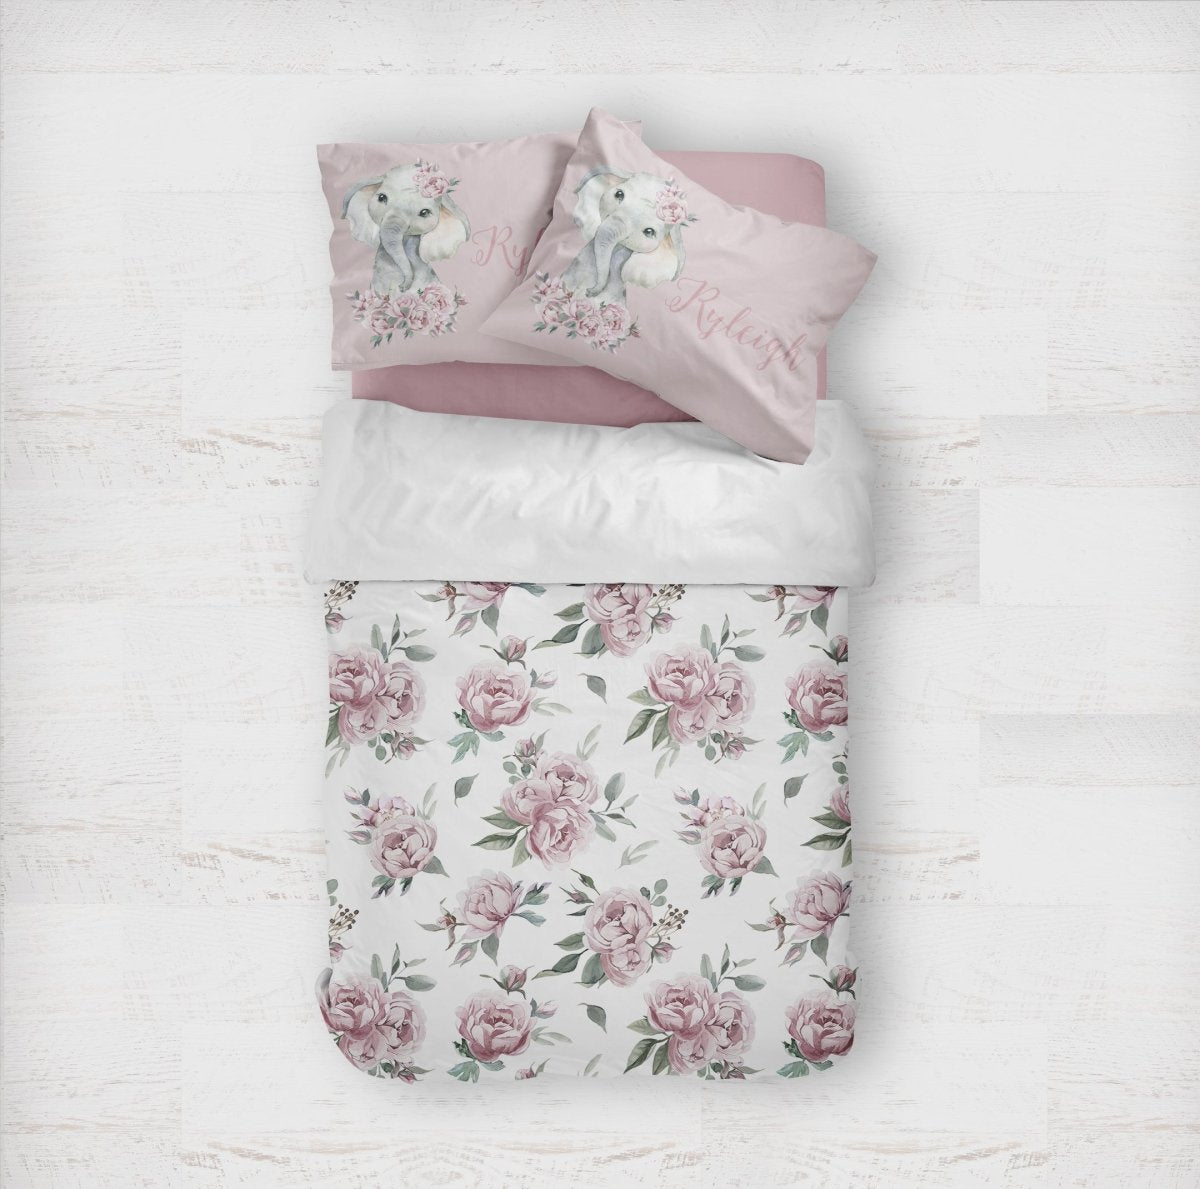 Floral Elephant Personalized Kids Bedding Set (Comforter or Duvet Cover) - Floral Elephant, gender_girl, text